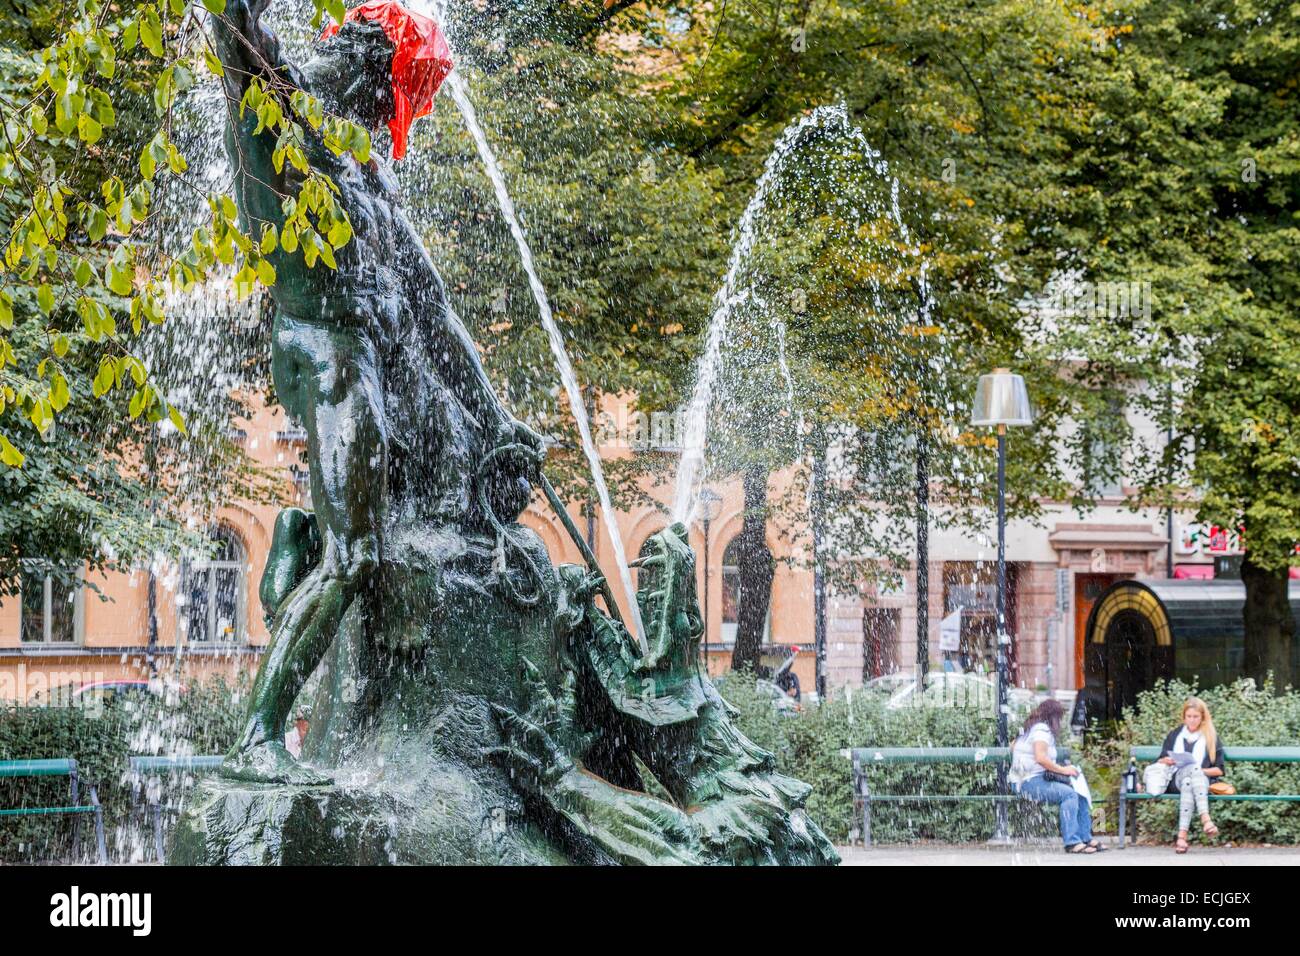 La Svezia, Stoccolma, Sodermalm district, Mariatorget fontana con una scultura di Anders Henrik Wissler che rappresenta il dio norvegese Thor rivolta verso il serpente marino Jormungand Foto Stock